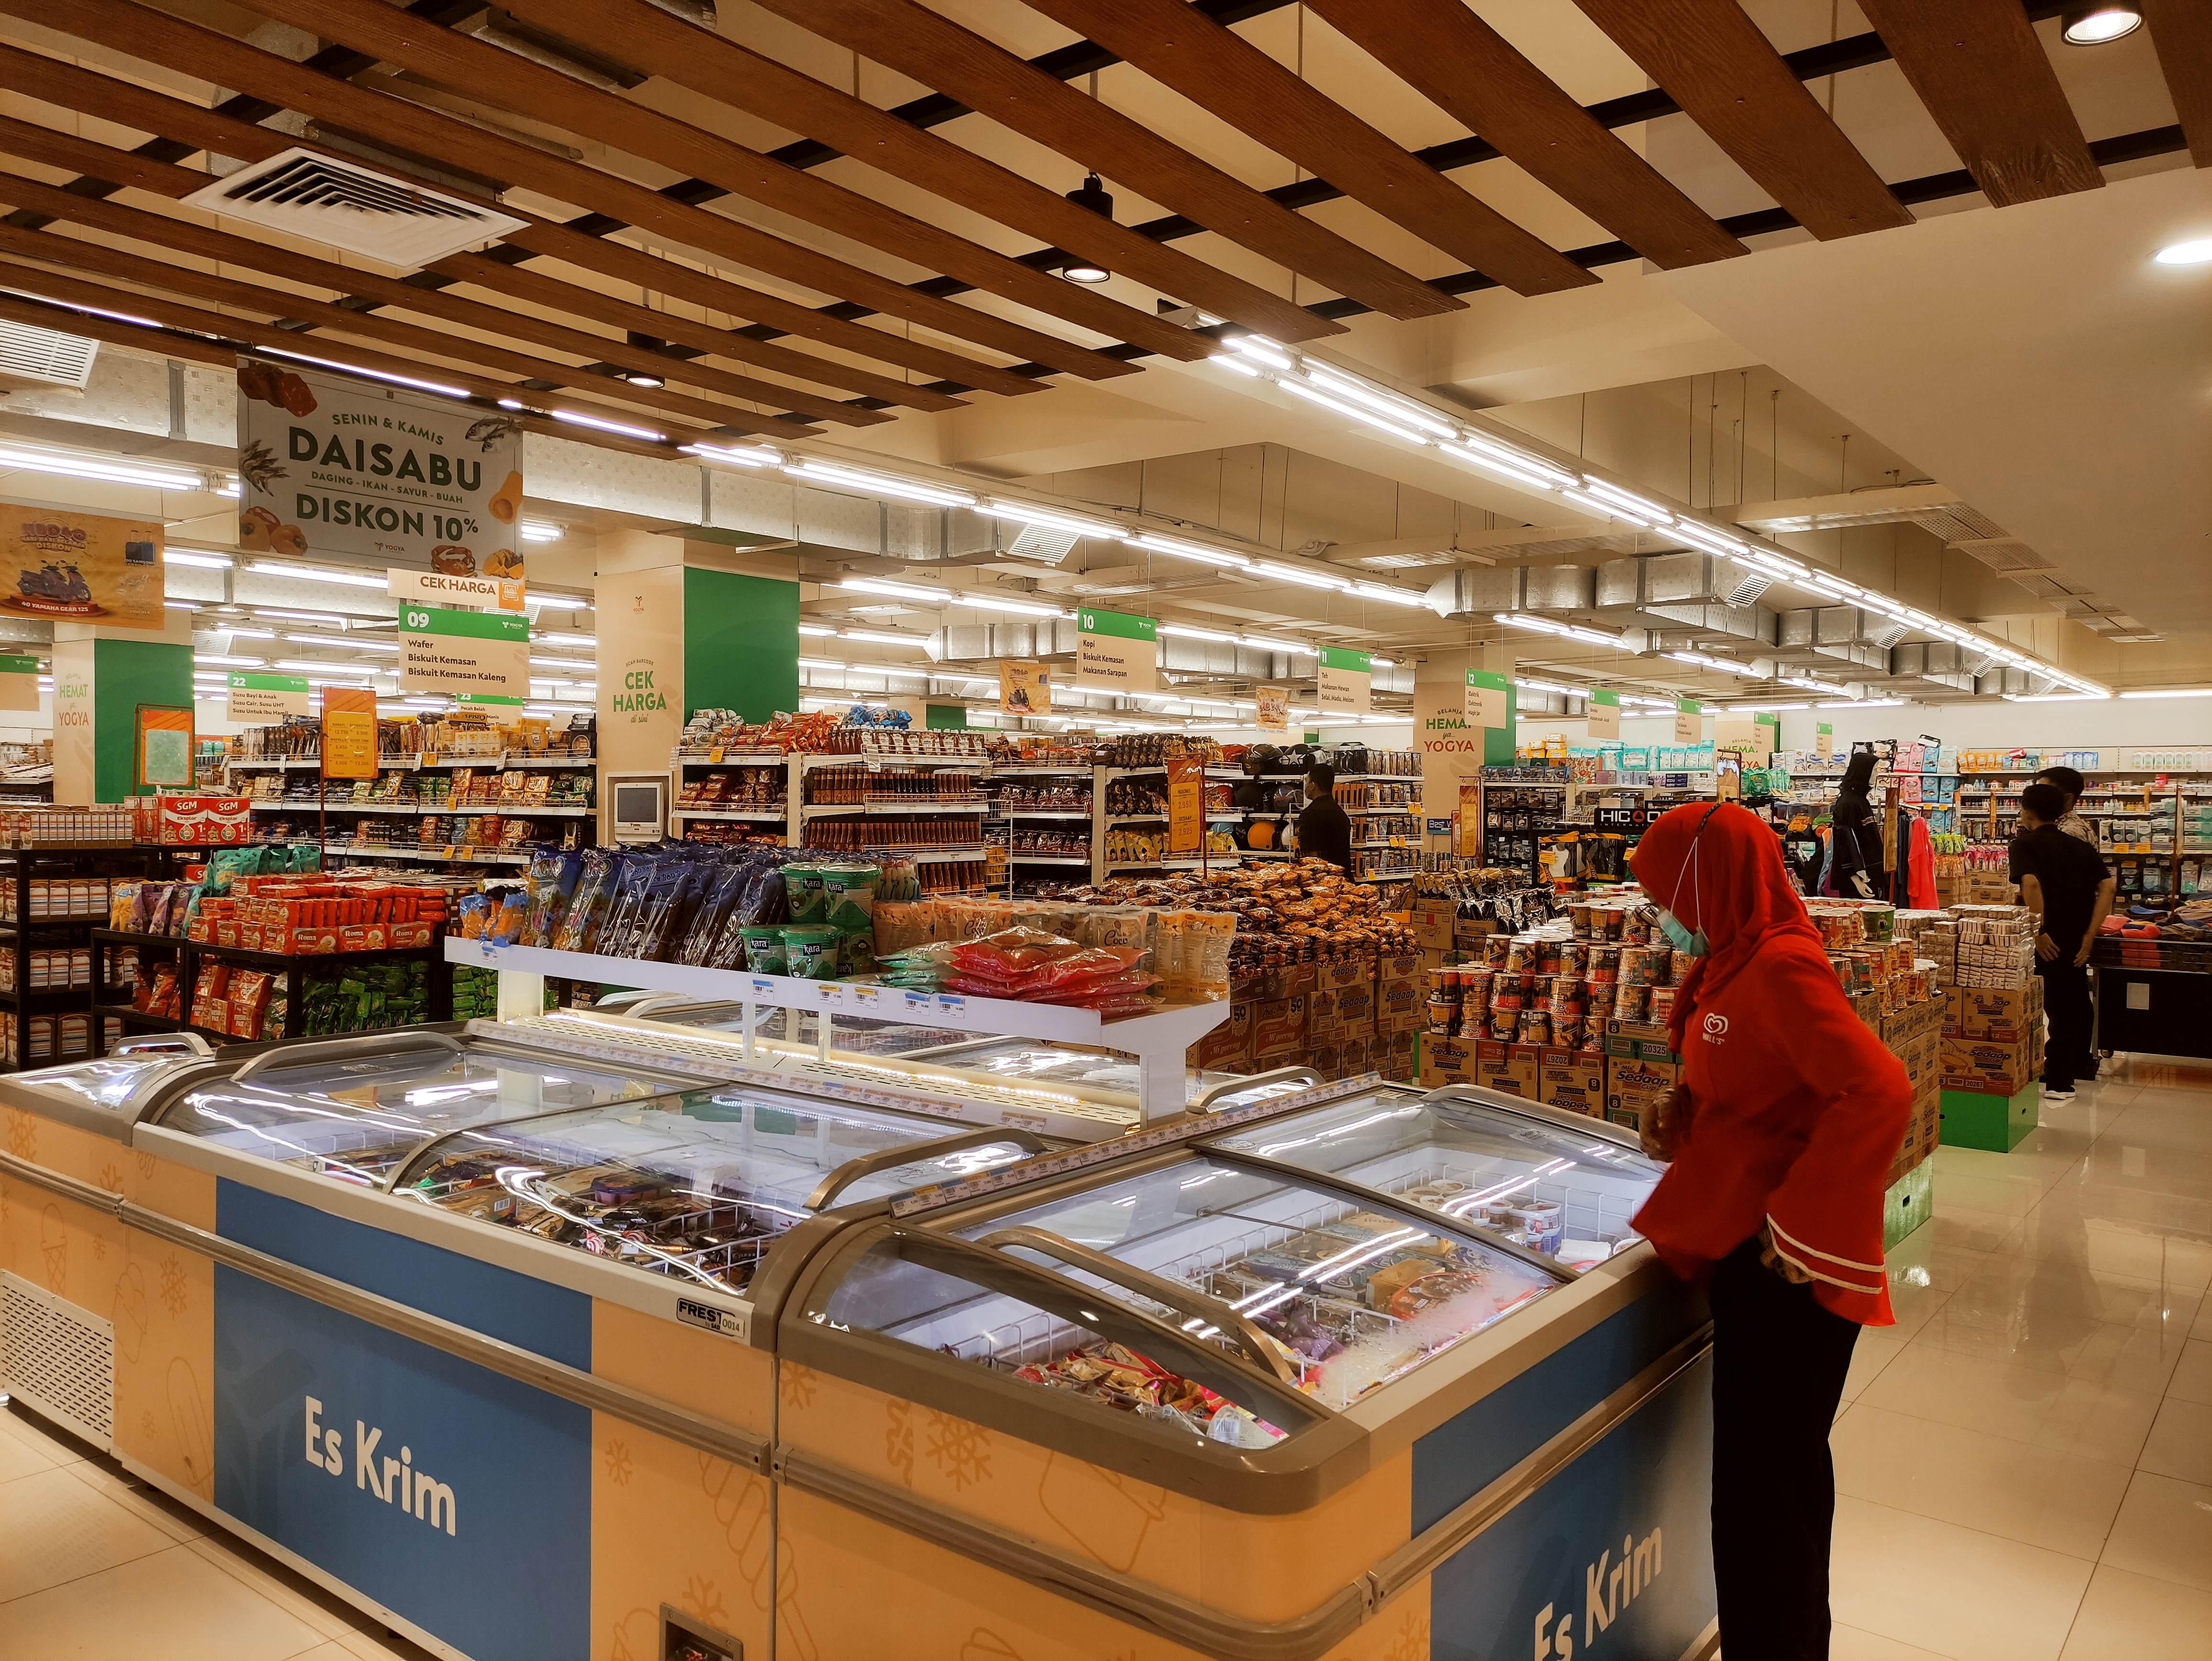 Luar Biasa! Belanja di Supermarket Toserba Yogya Slawi Lebih Nyaman dan Lengkap, Banyak Promo Menarik Nih